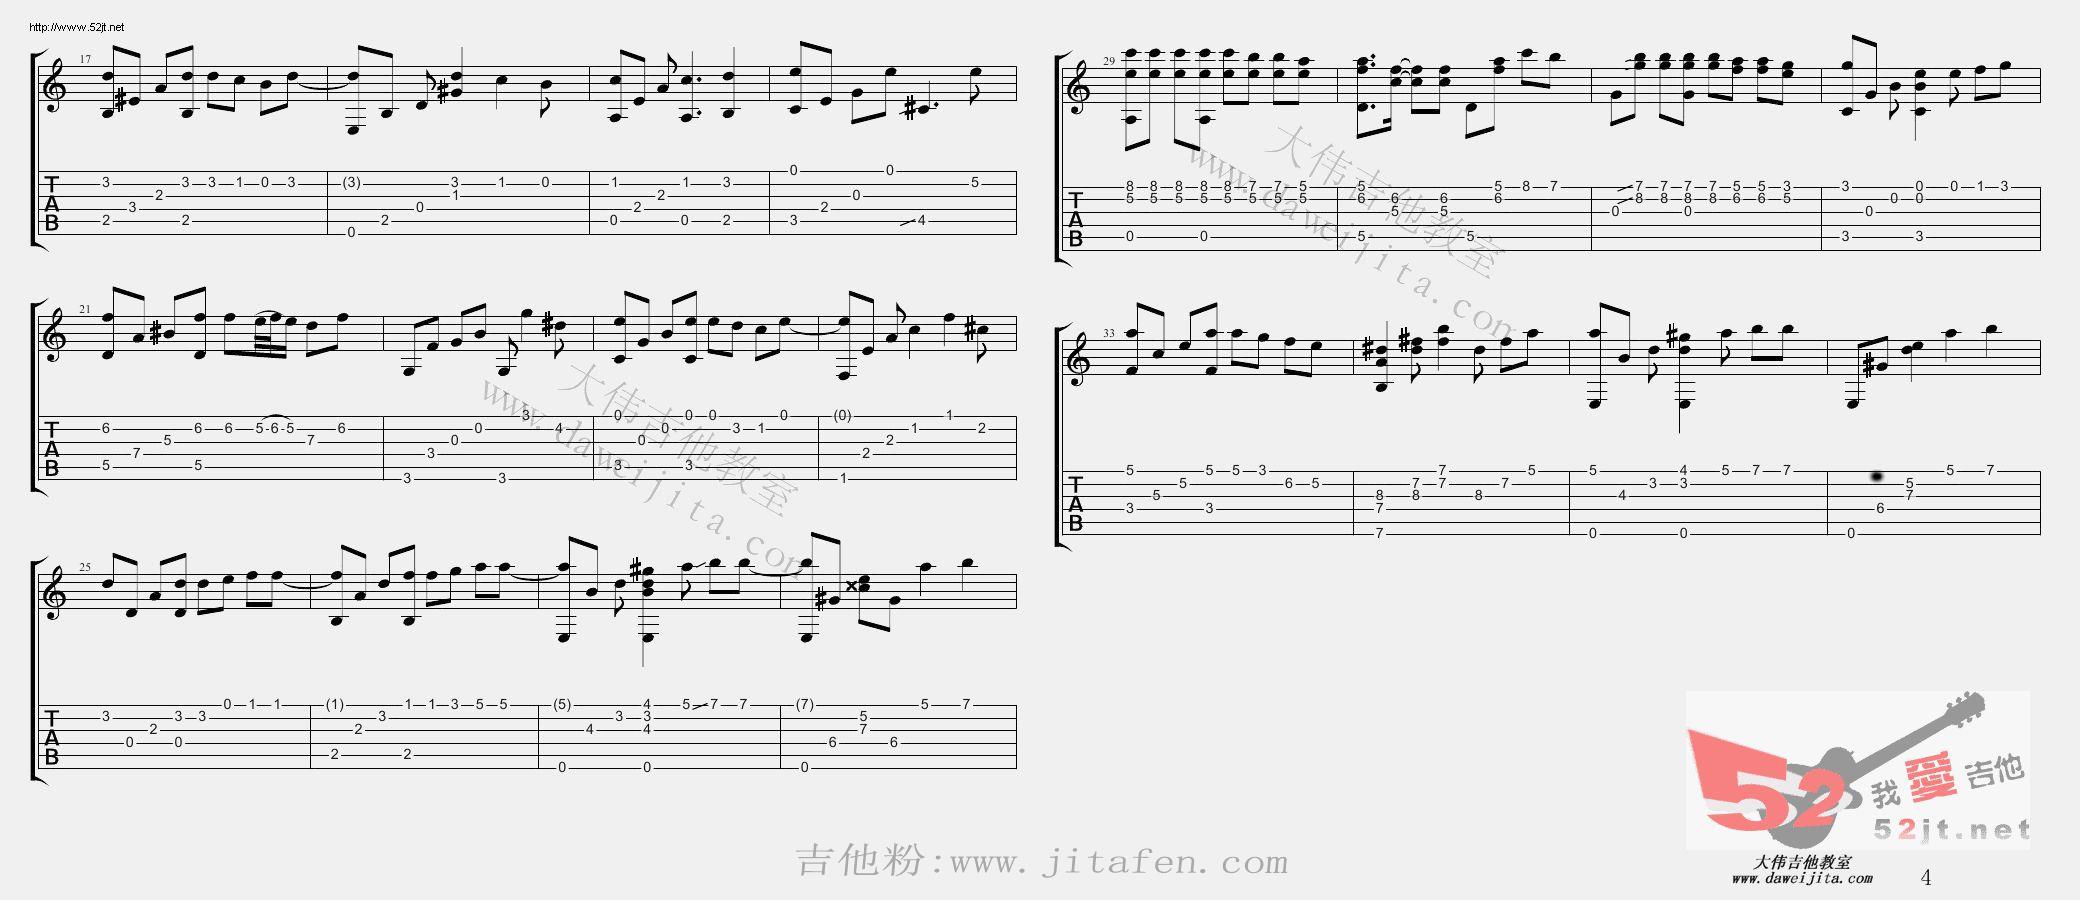 韩剧《浪漫命运》插曲 命运 教学吉他谱视频 吉他谱